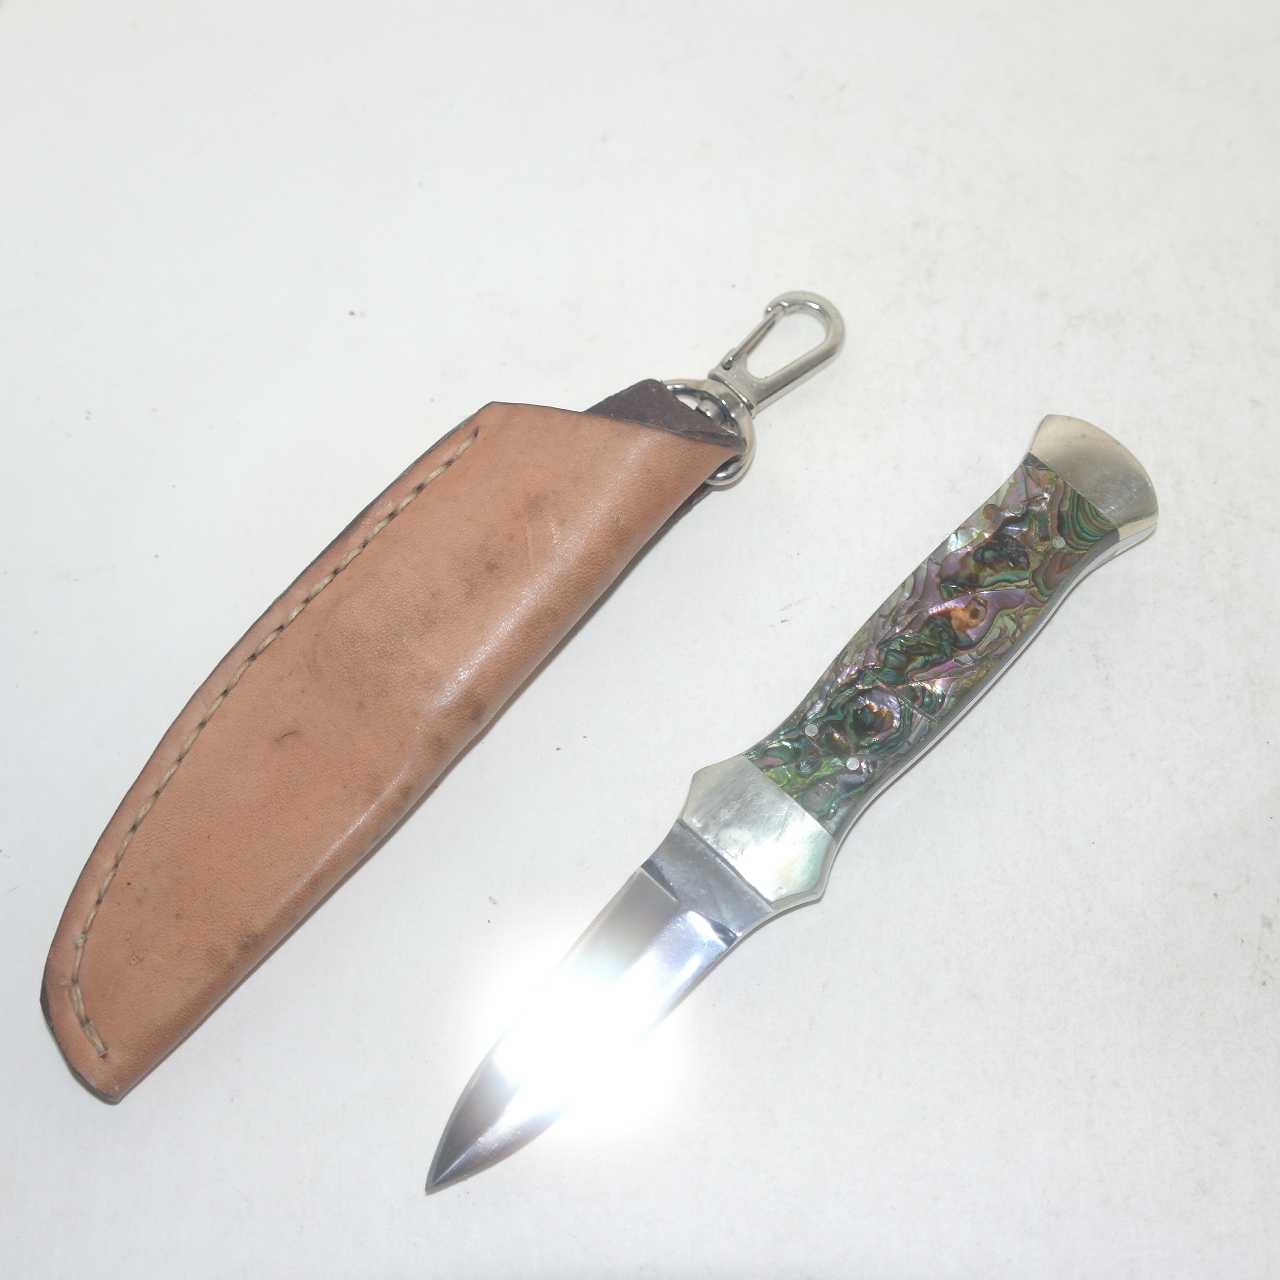 묵직한 금속재질에 자개빛장식이된 등산용 칼